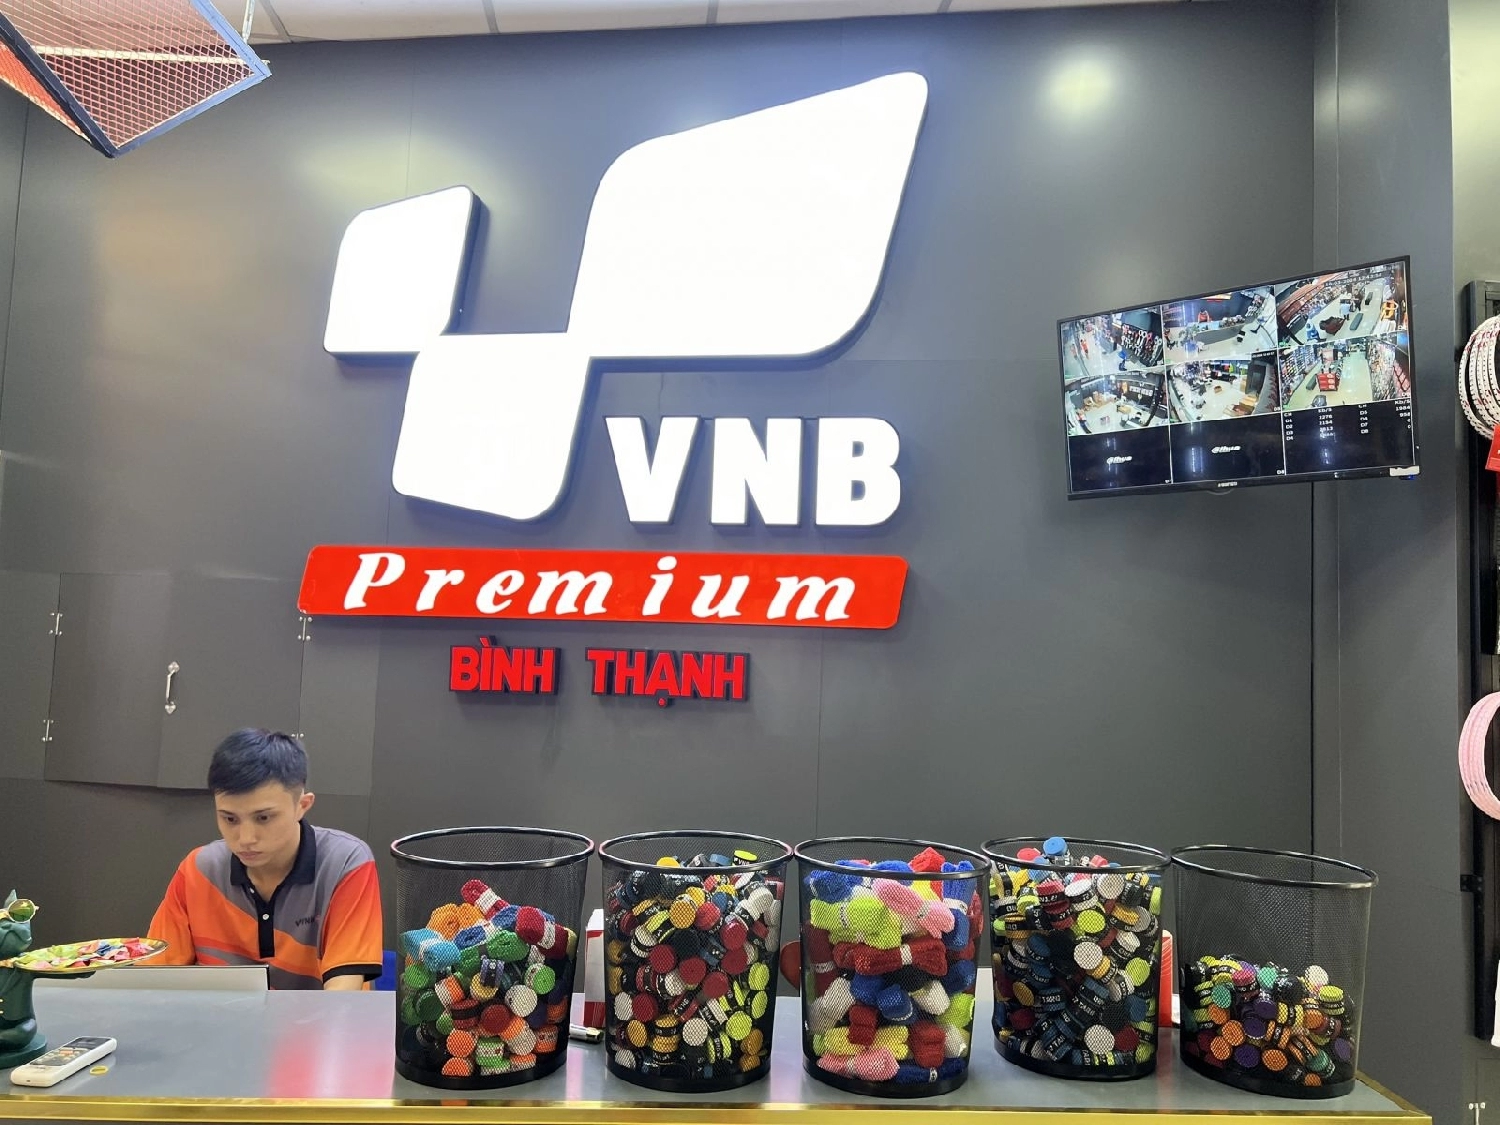 Dịch vụ tại cửa hàng VNB Premium Bình Thạnh